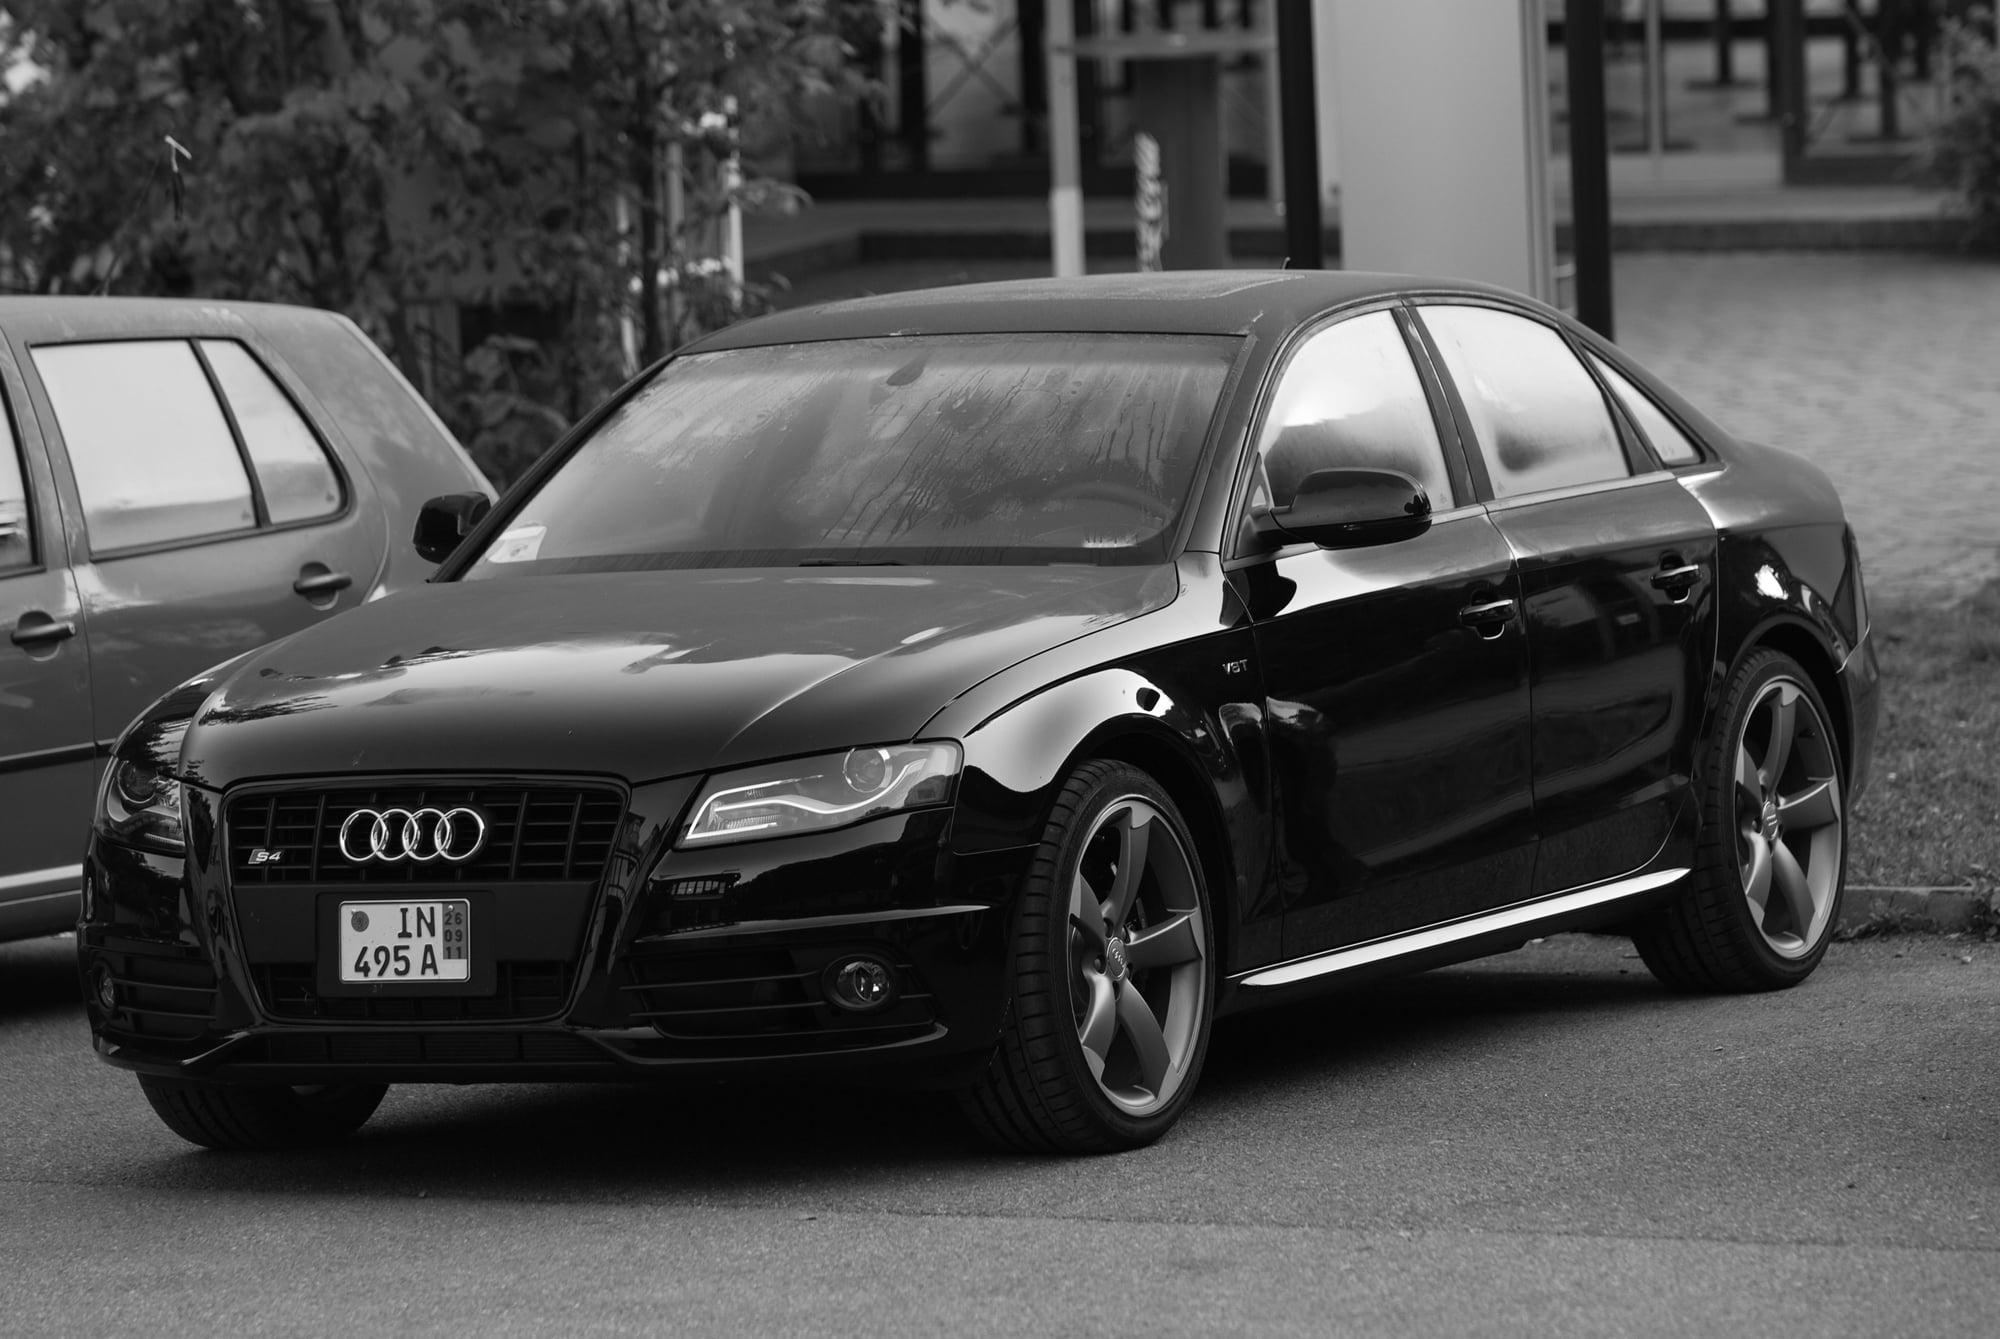 2012 Audi S4 - FS - 2012 S4 6MT Black on black - Used - VIN waumgafl7ca014235 - 102,000 Miles - 6 cyl - AWD - Manual - Sedan - Black - Philadelphia, PA 19130, United States